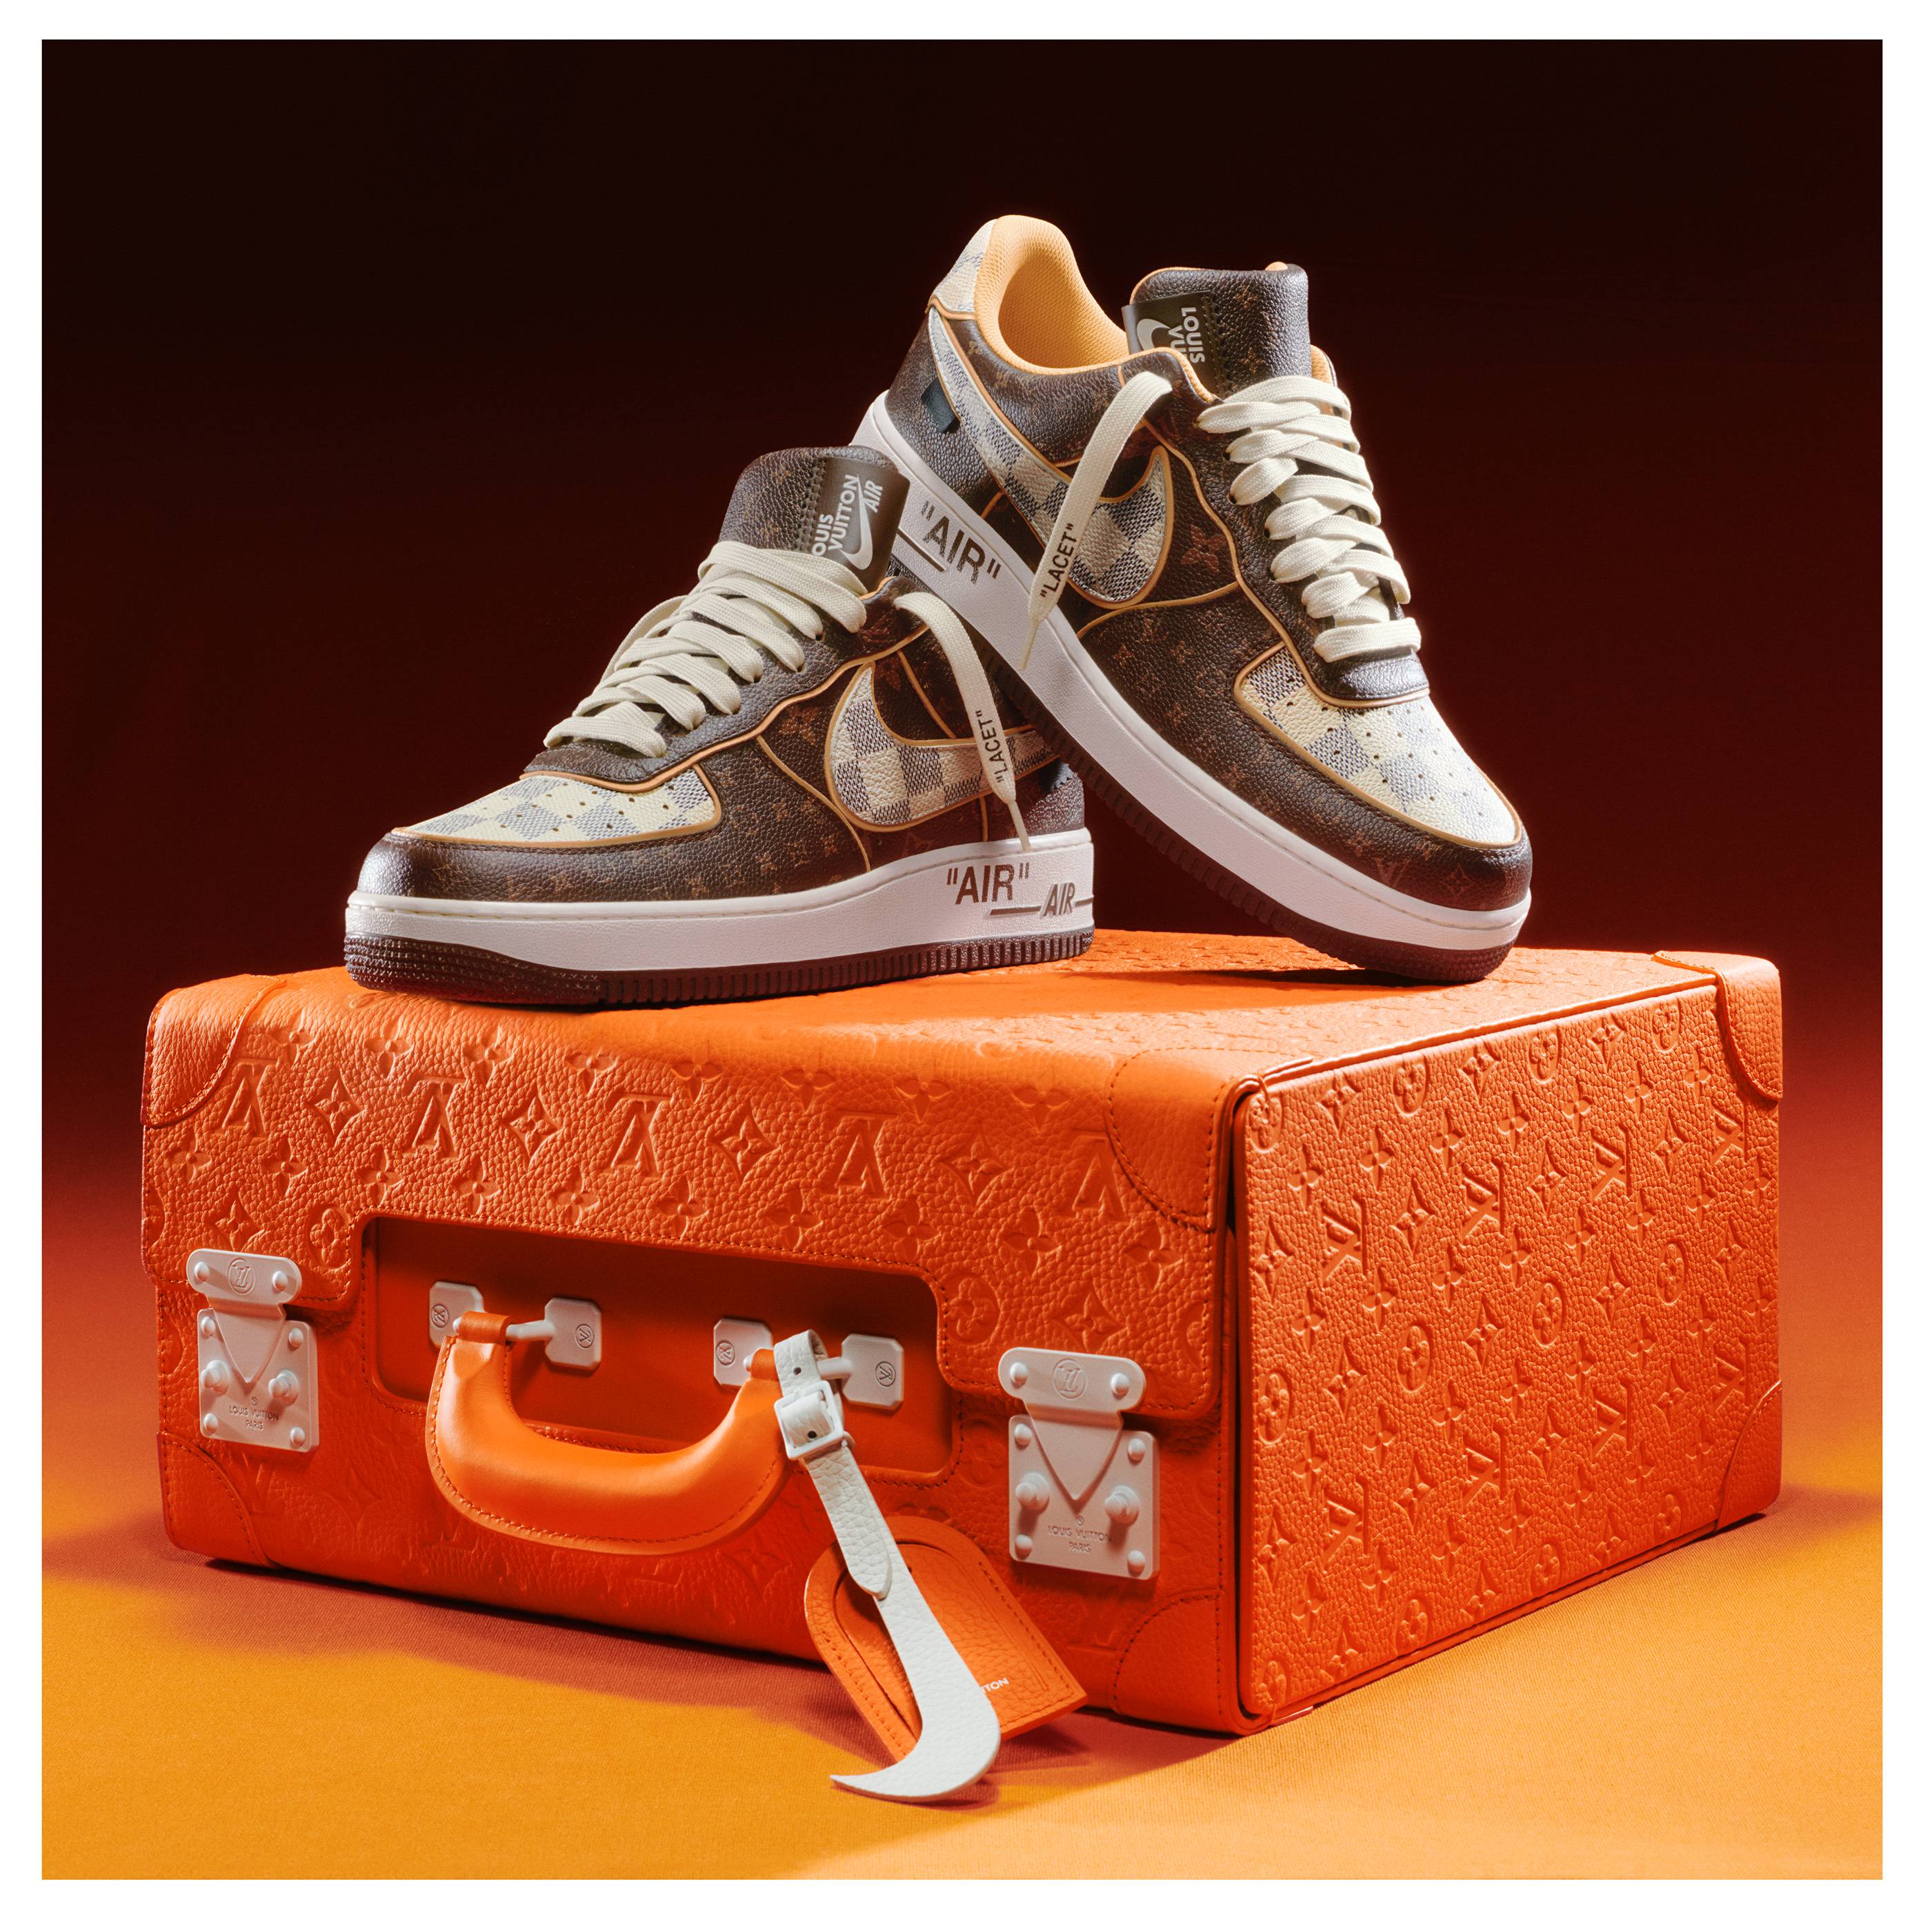 Les sneakers Louis Vuitton et Nike "Air Force 1" par Virgil Abloh, crédits : Sotheby's